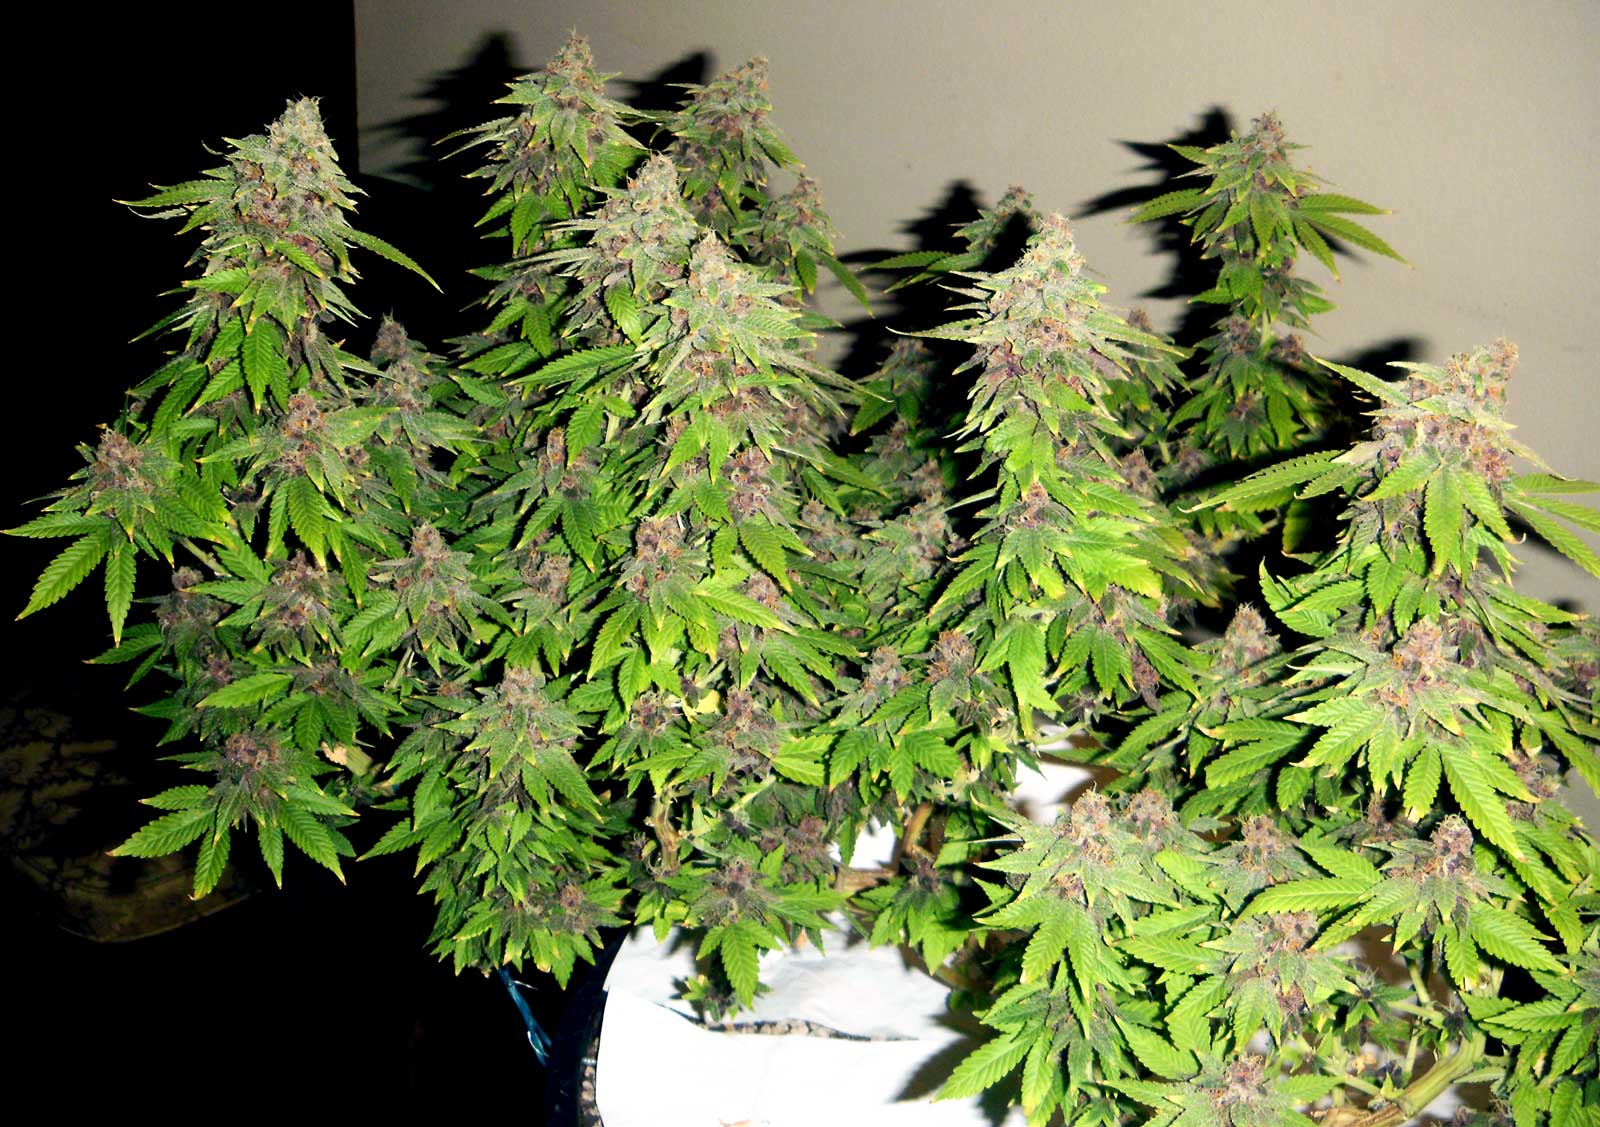 Autoflower cannabis being grown